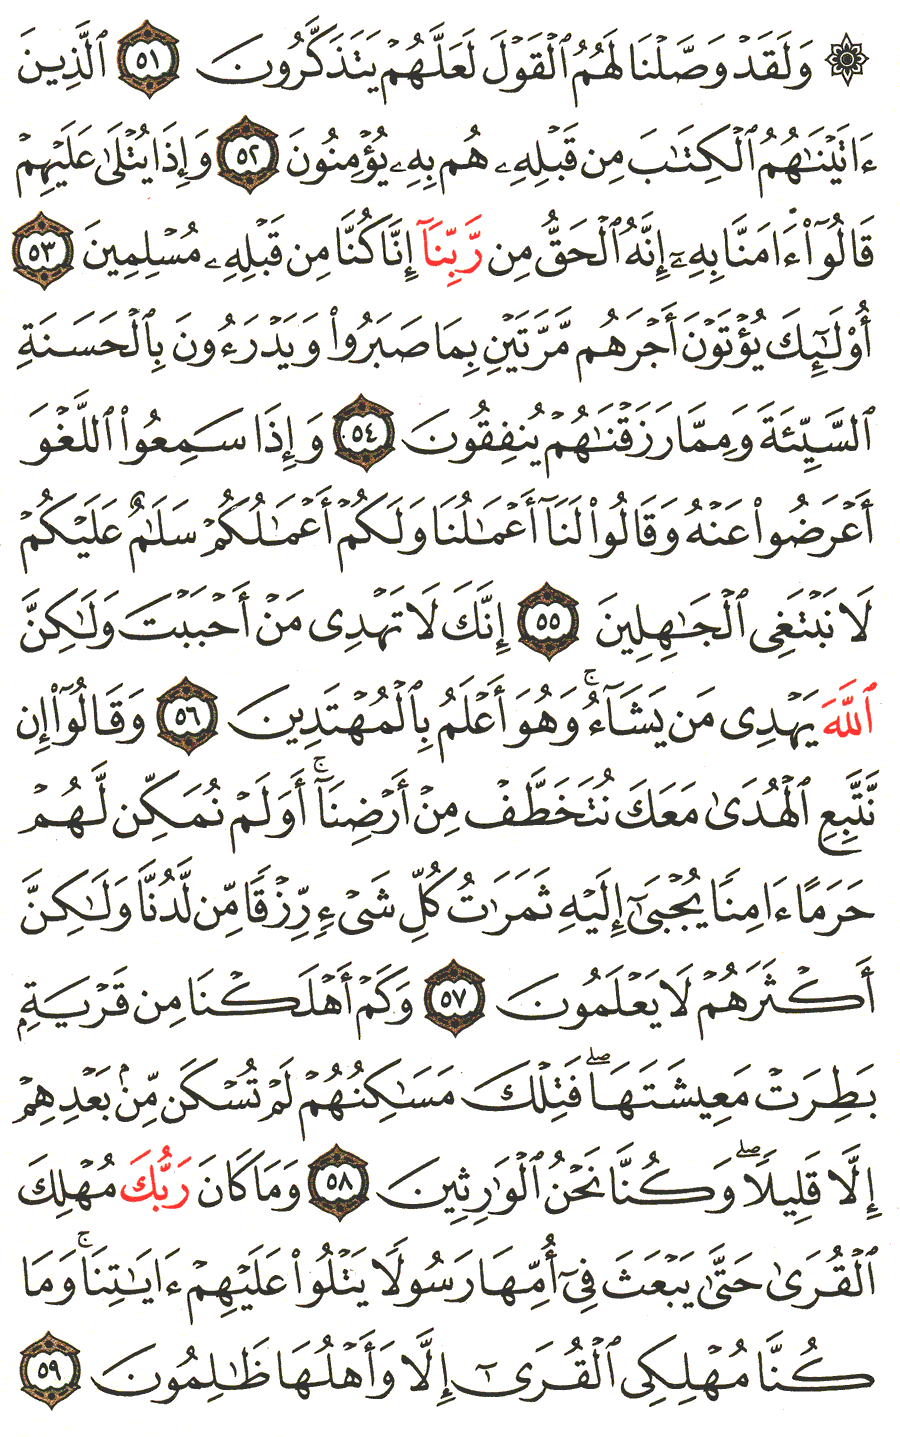 الصفحة 392 من القرآن الكريم